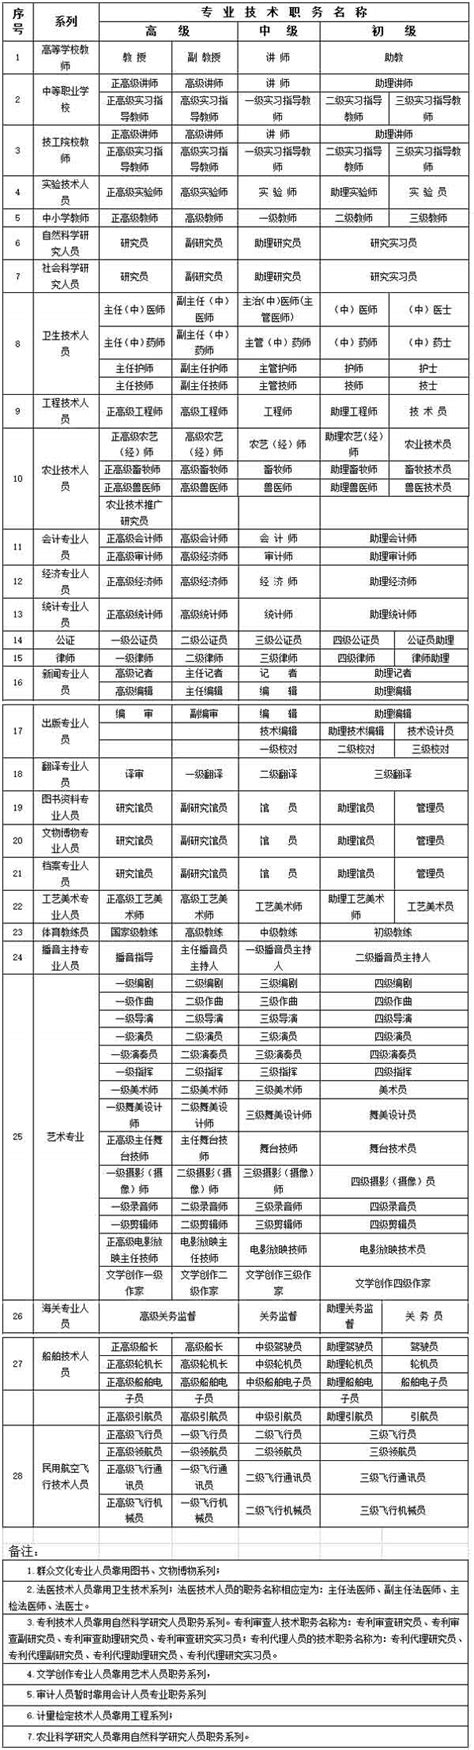 2022年度长沙人才集团工程系列中级职称评审通过人员名单公示-湖南职称评审网